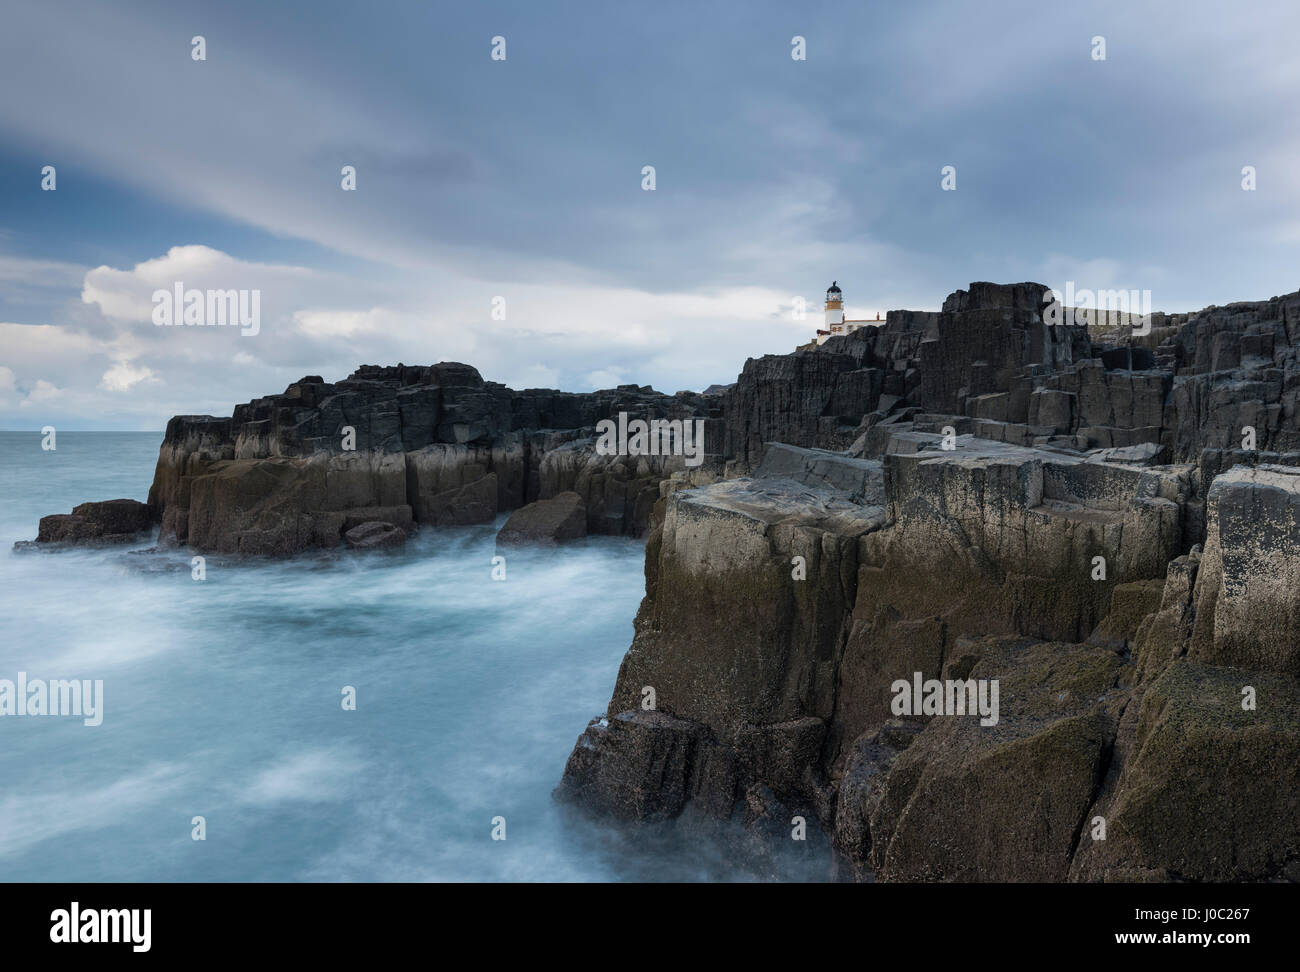 The dramatic coastline and lighthouse at Neist Point, Isle of Skye, Inner Hebrides, Scotland, UK Stock Photo